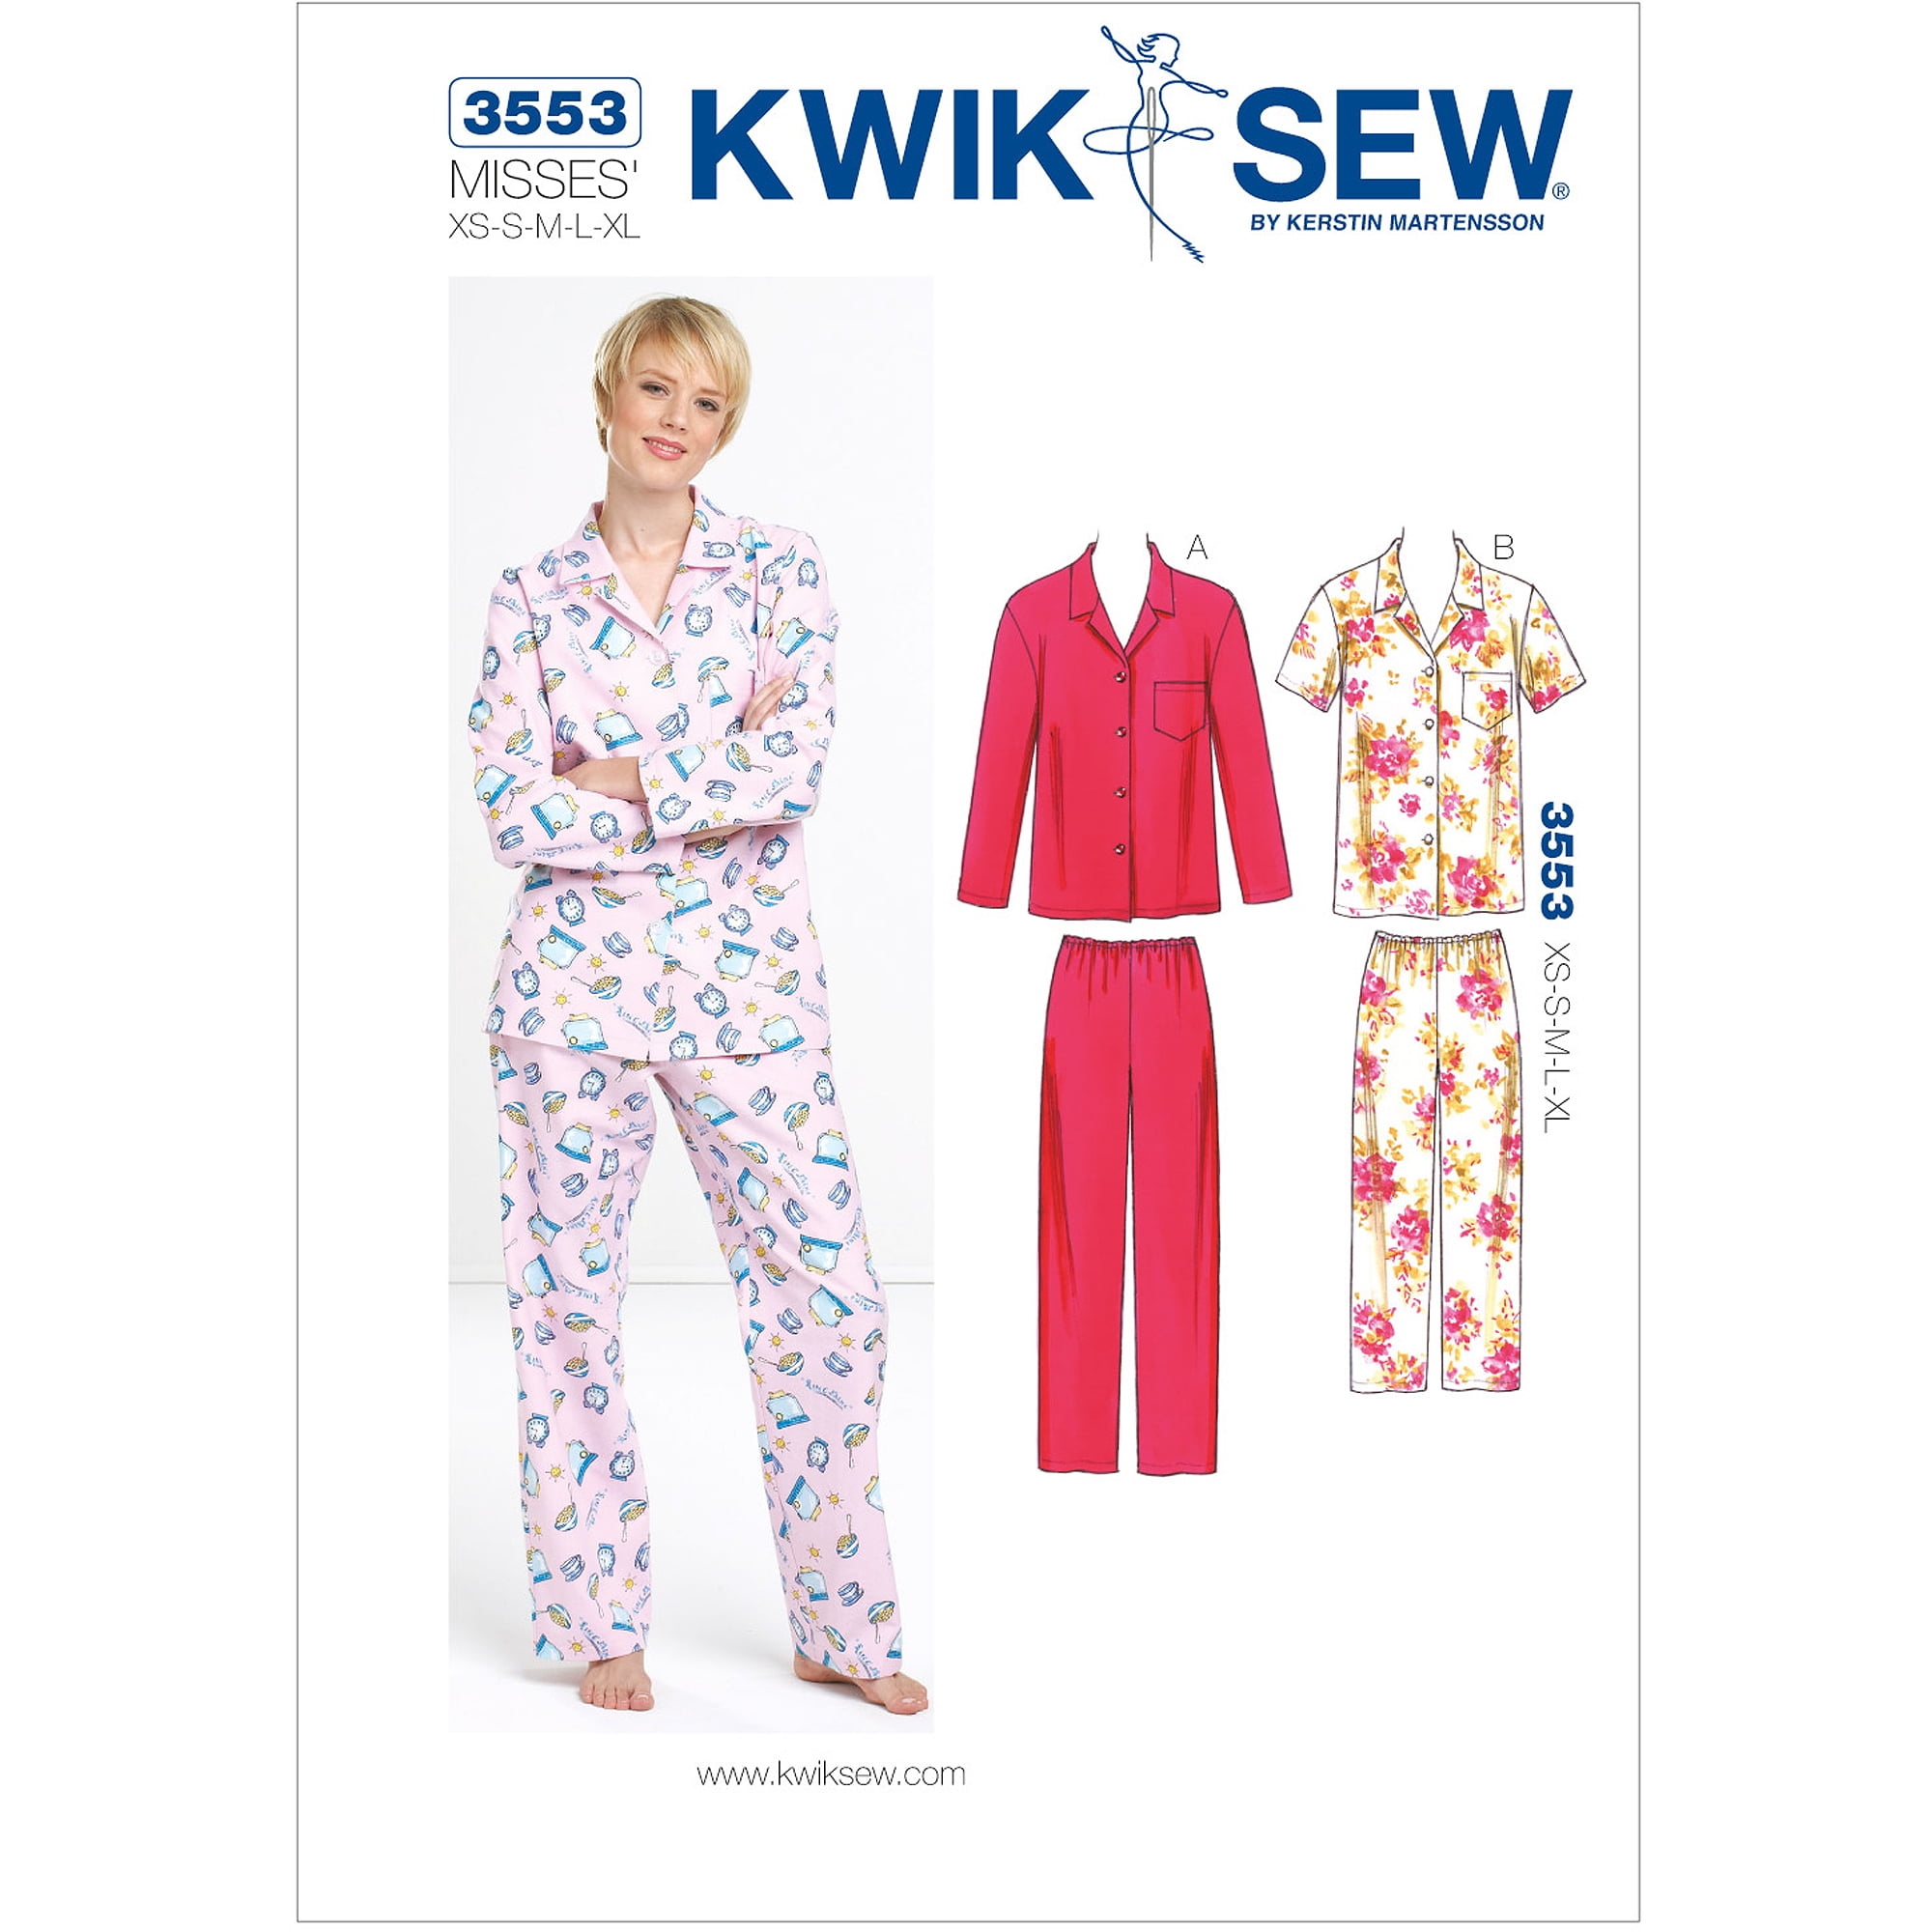 KWIK SEW - K3754 Dress & Tunic Pattern - 033594375452